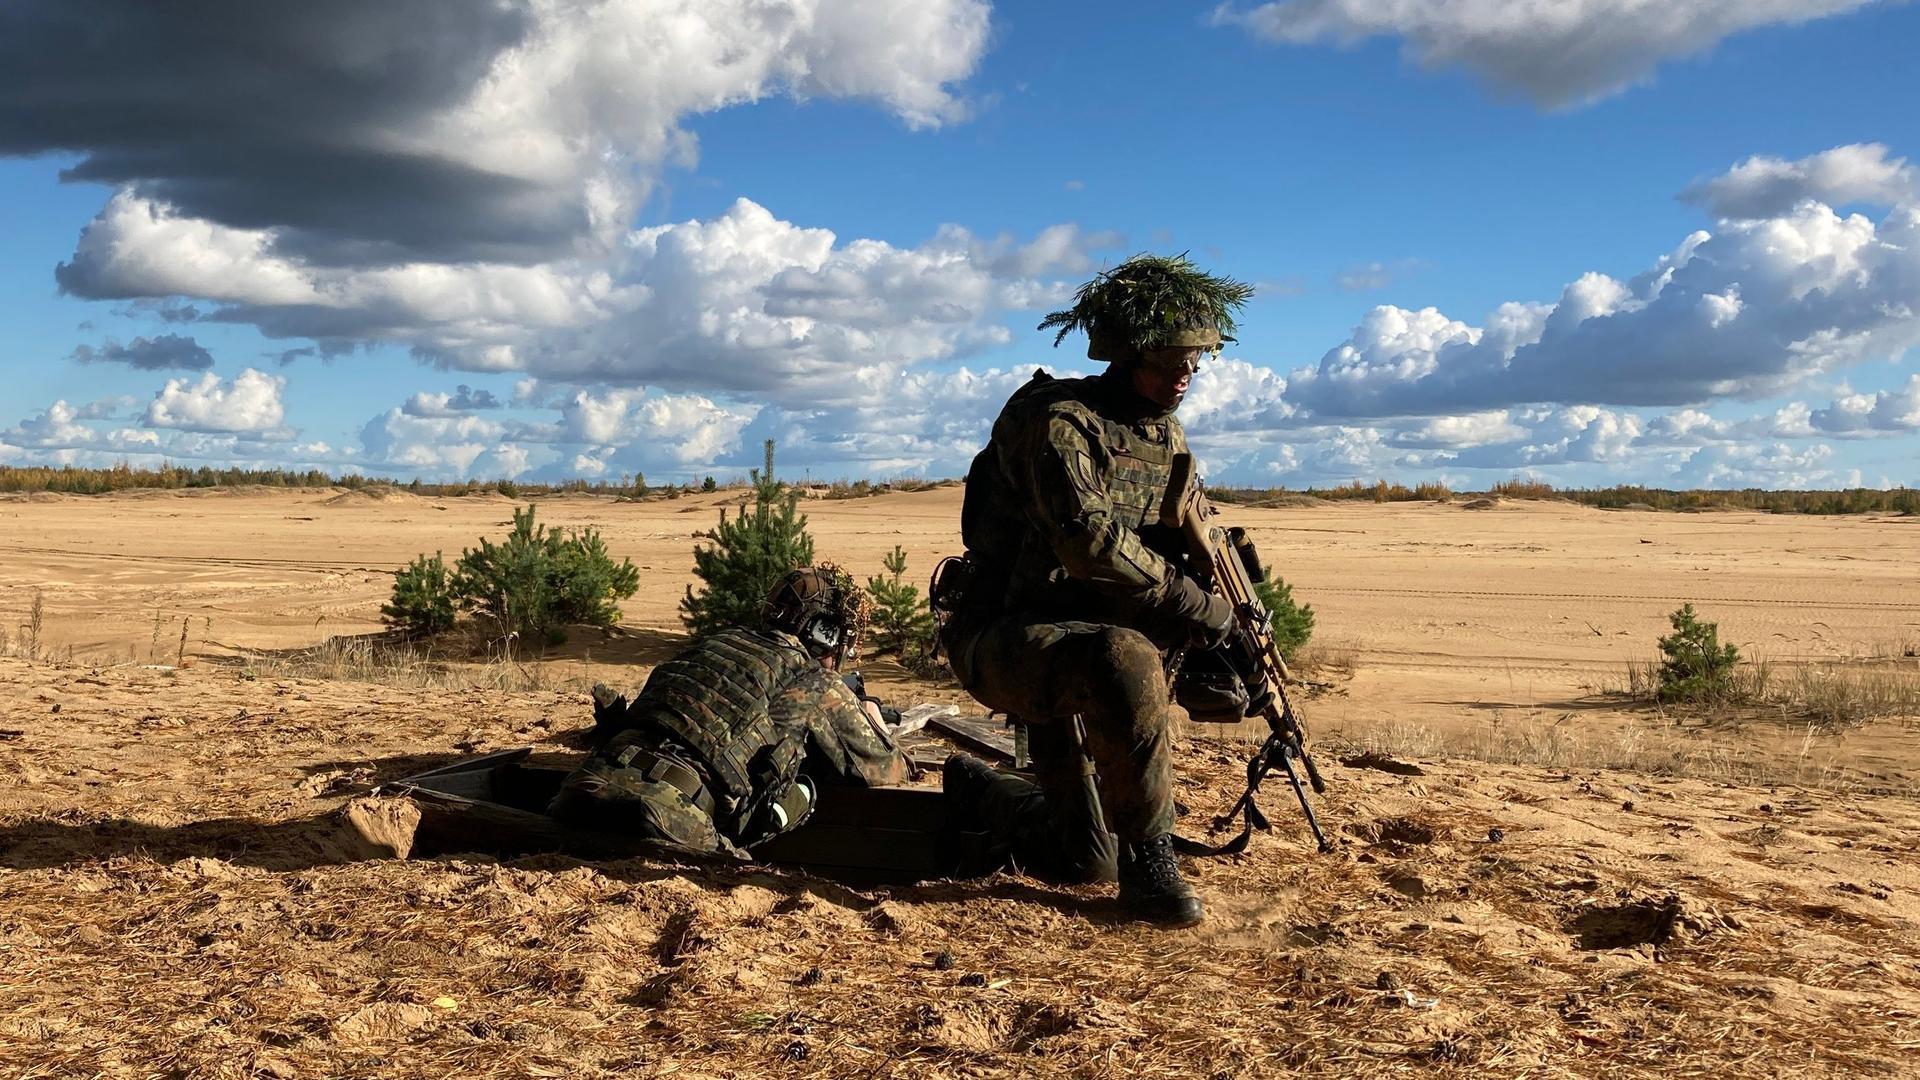  Ein getarnter Soldat kniet auf trockenem, braunen Boden und hält ein Gewehr mit dem Lauf nach unten.